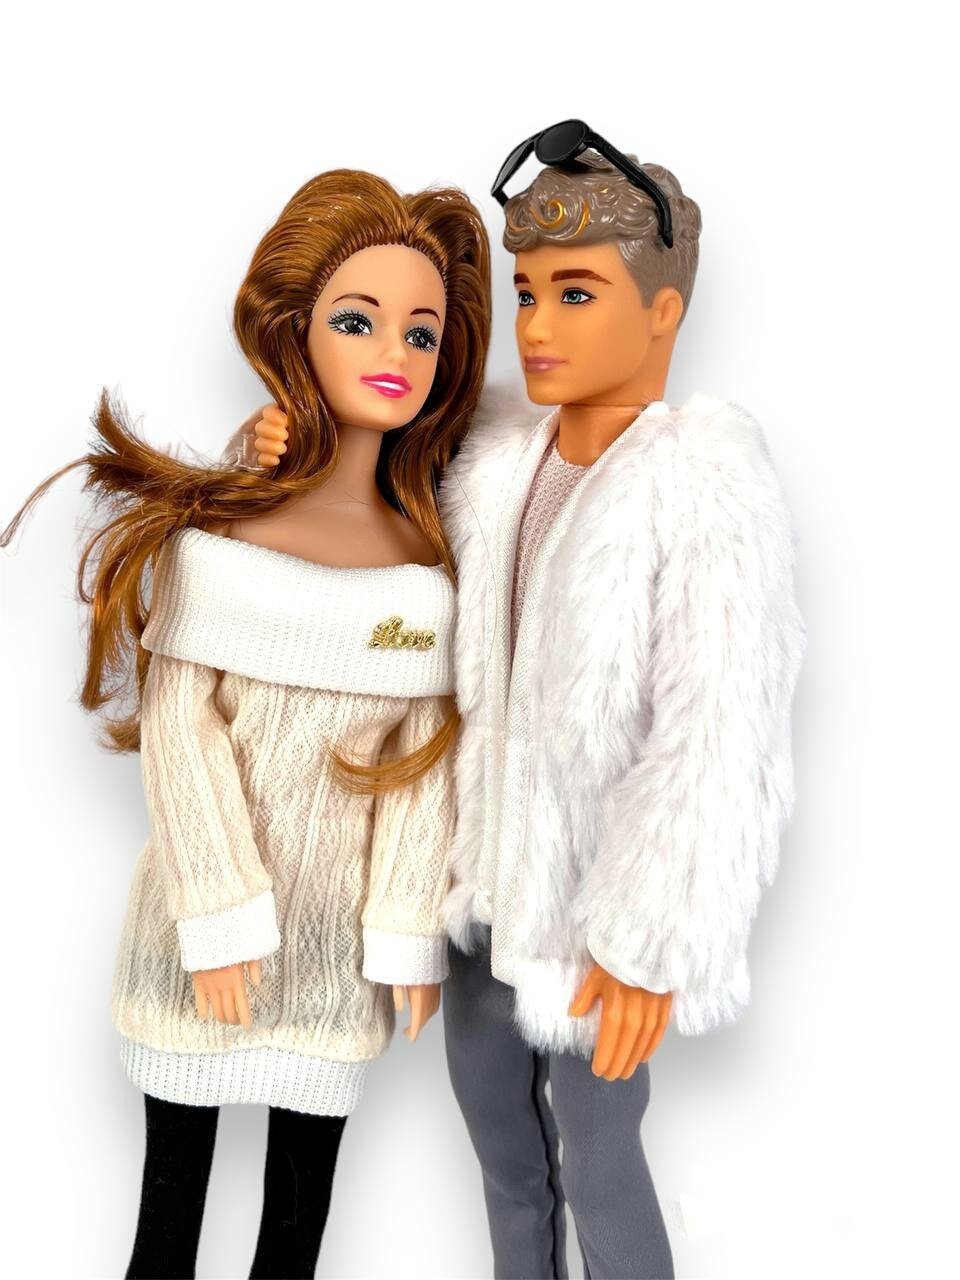 Куклы"Барби и ее парень Кен" - набор из 2-х модных кукол для девочек и мальчиков от 3 до 14 лет